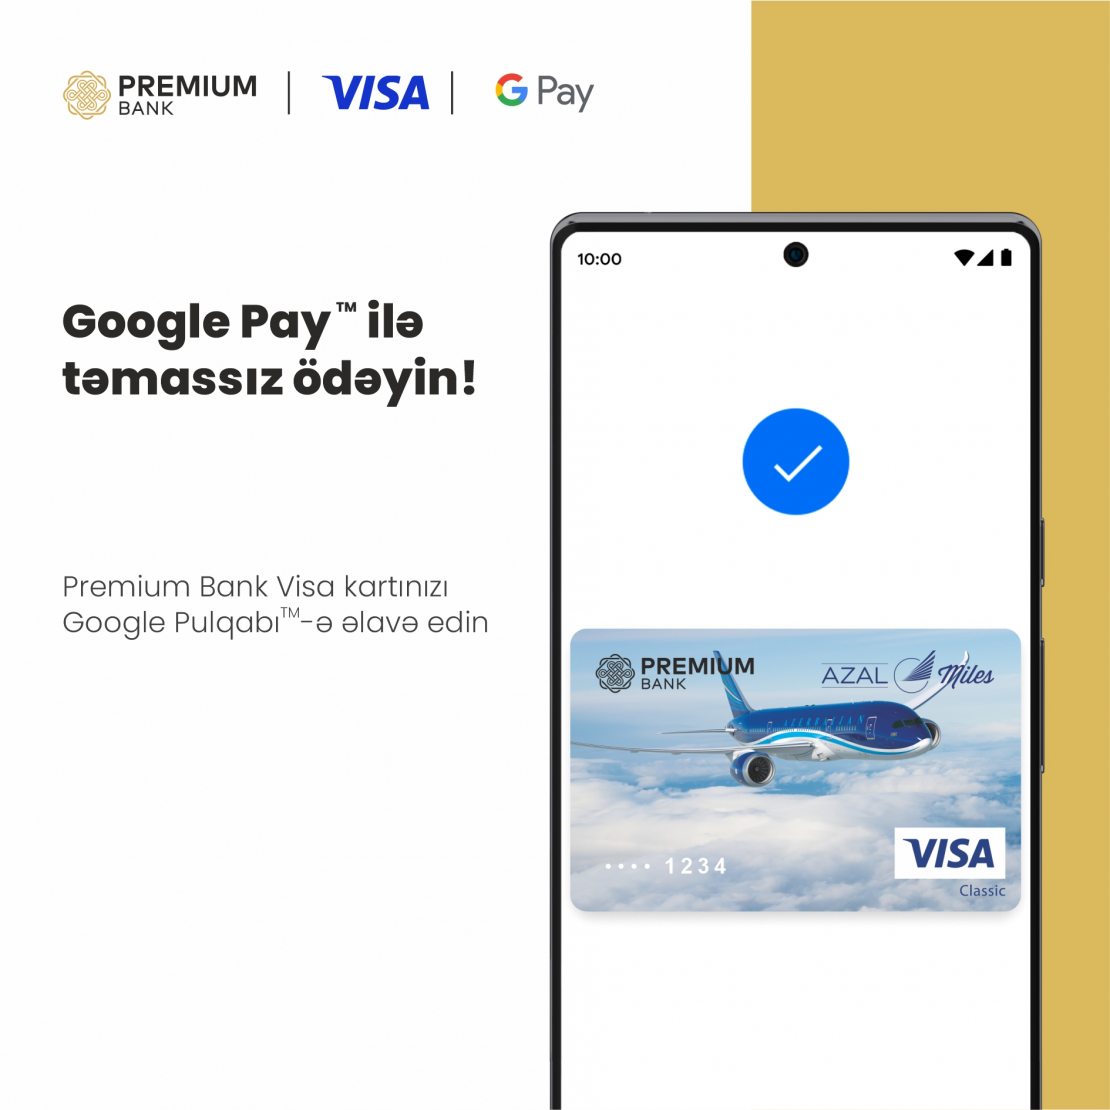 Azərikard-ın partnyor banklarından olan Premium Bank Google Pay xidmətini istifadəyə verdi.